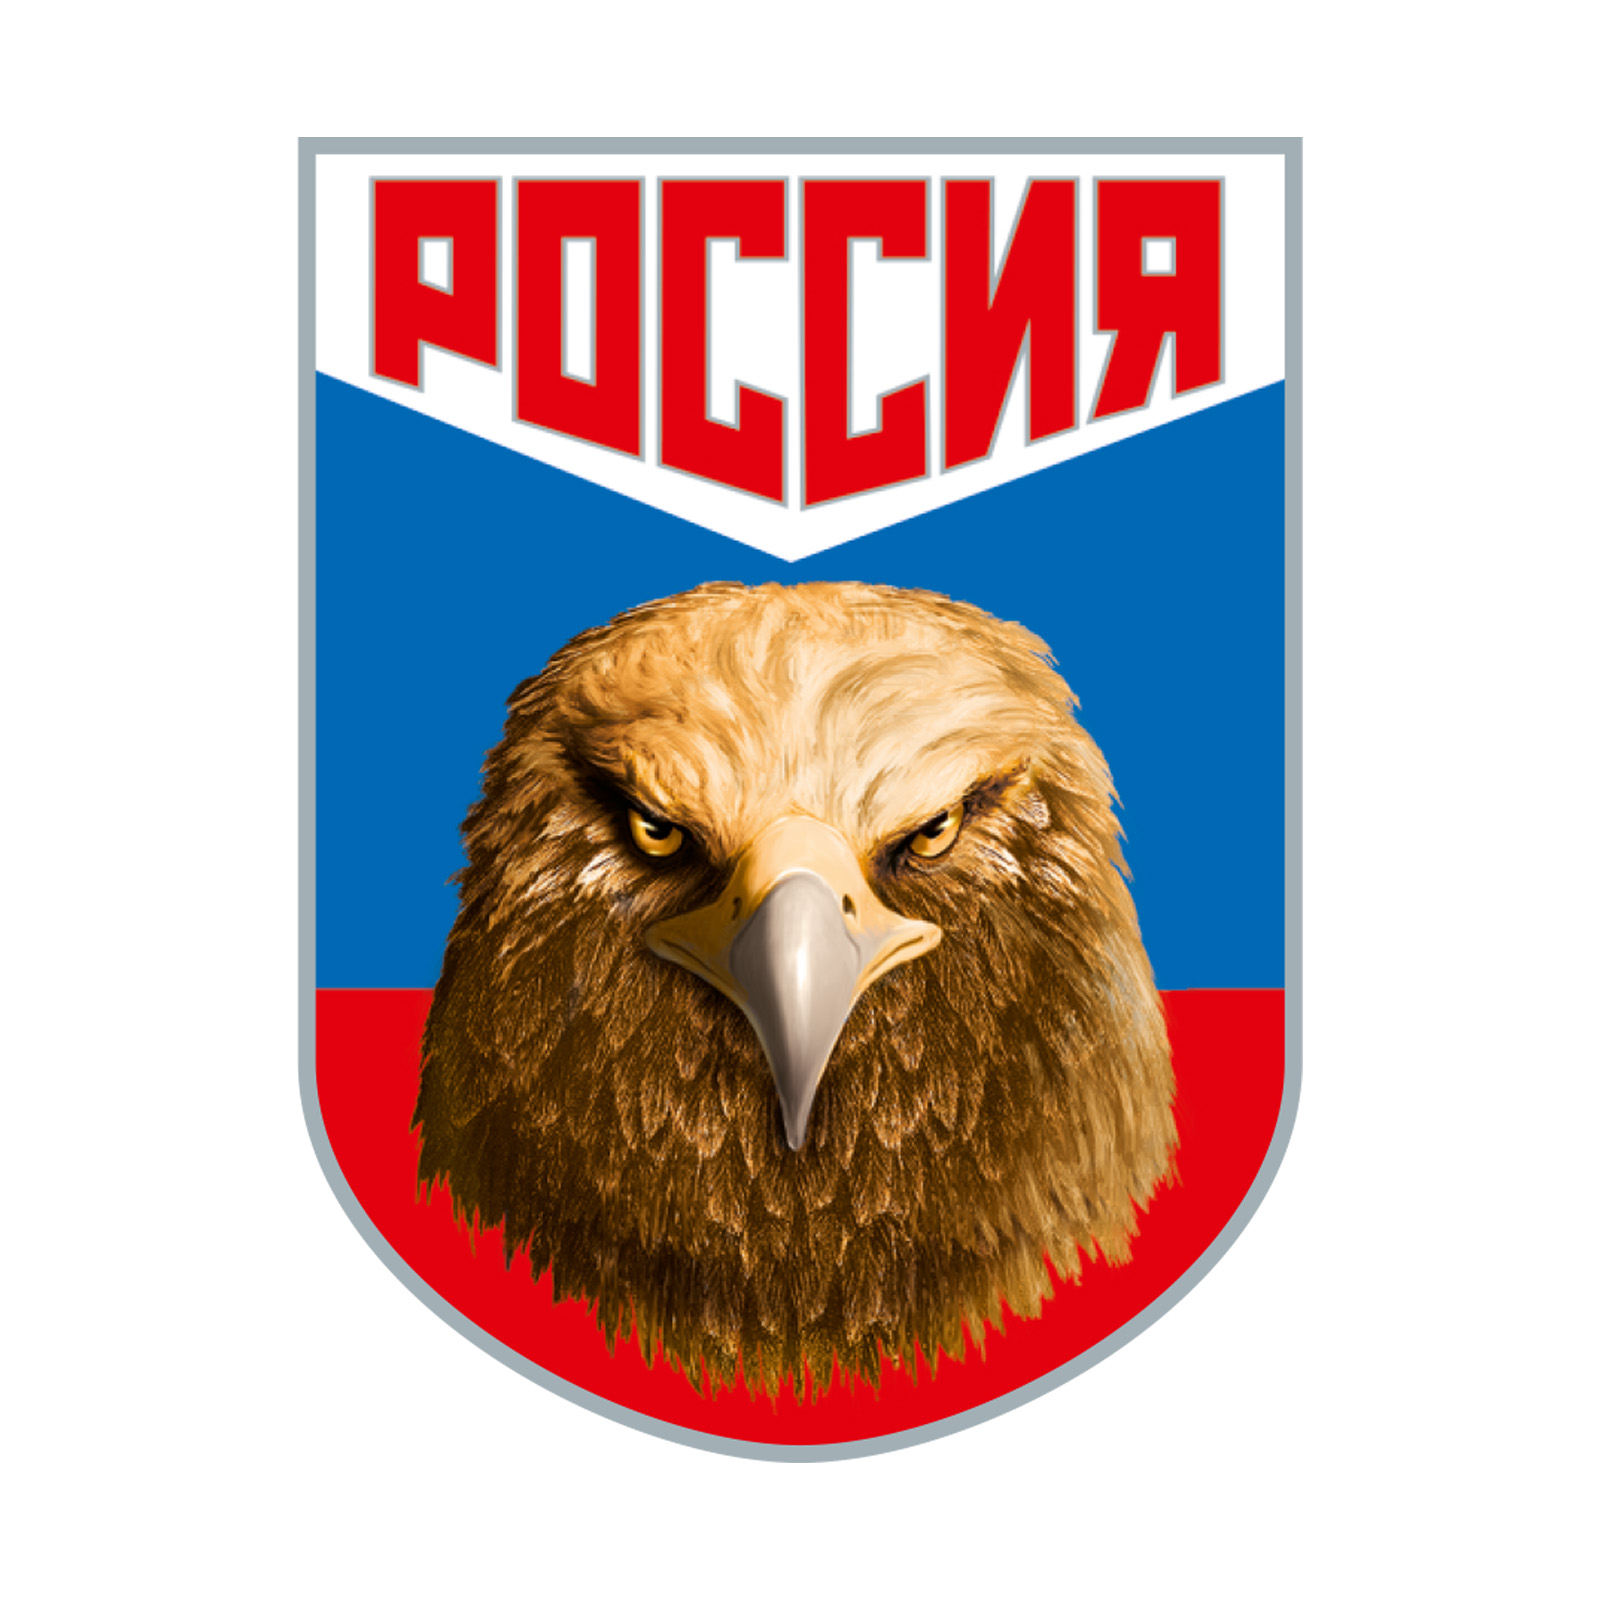 Васильковая футболка с термотрансфером "Россия" 